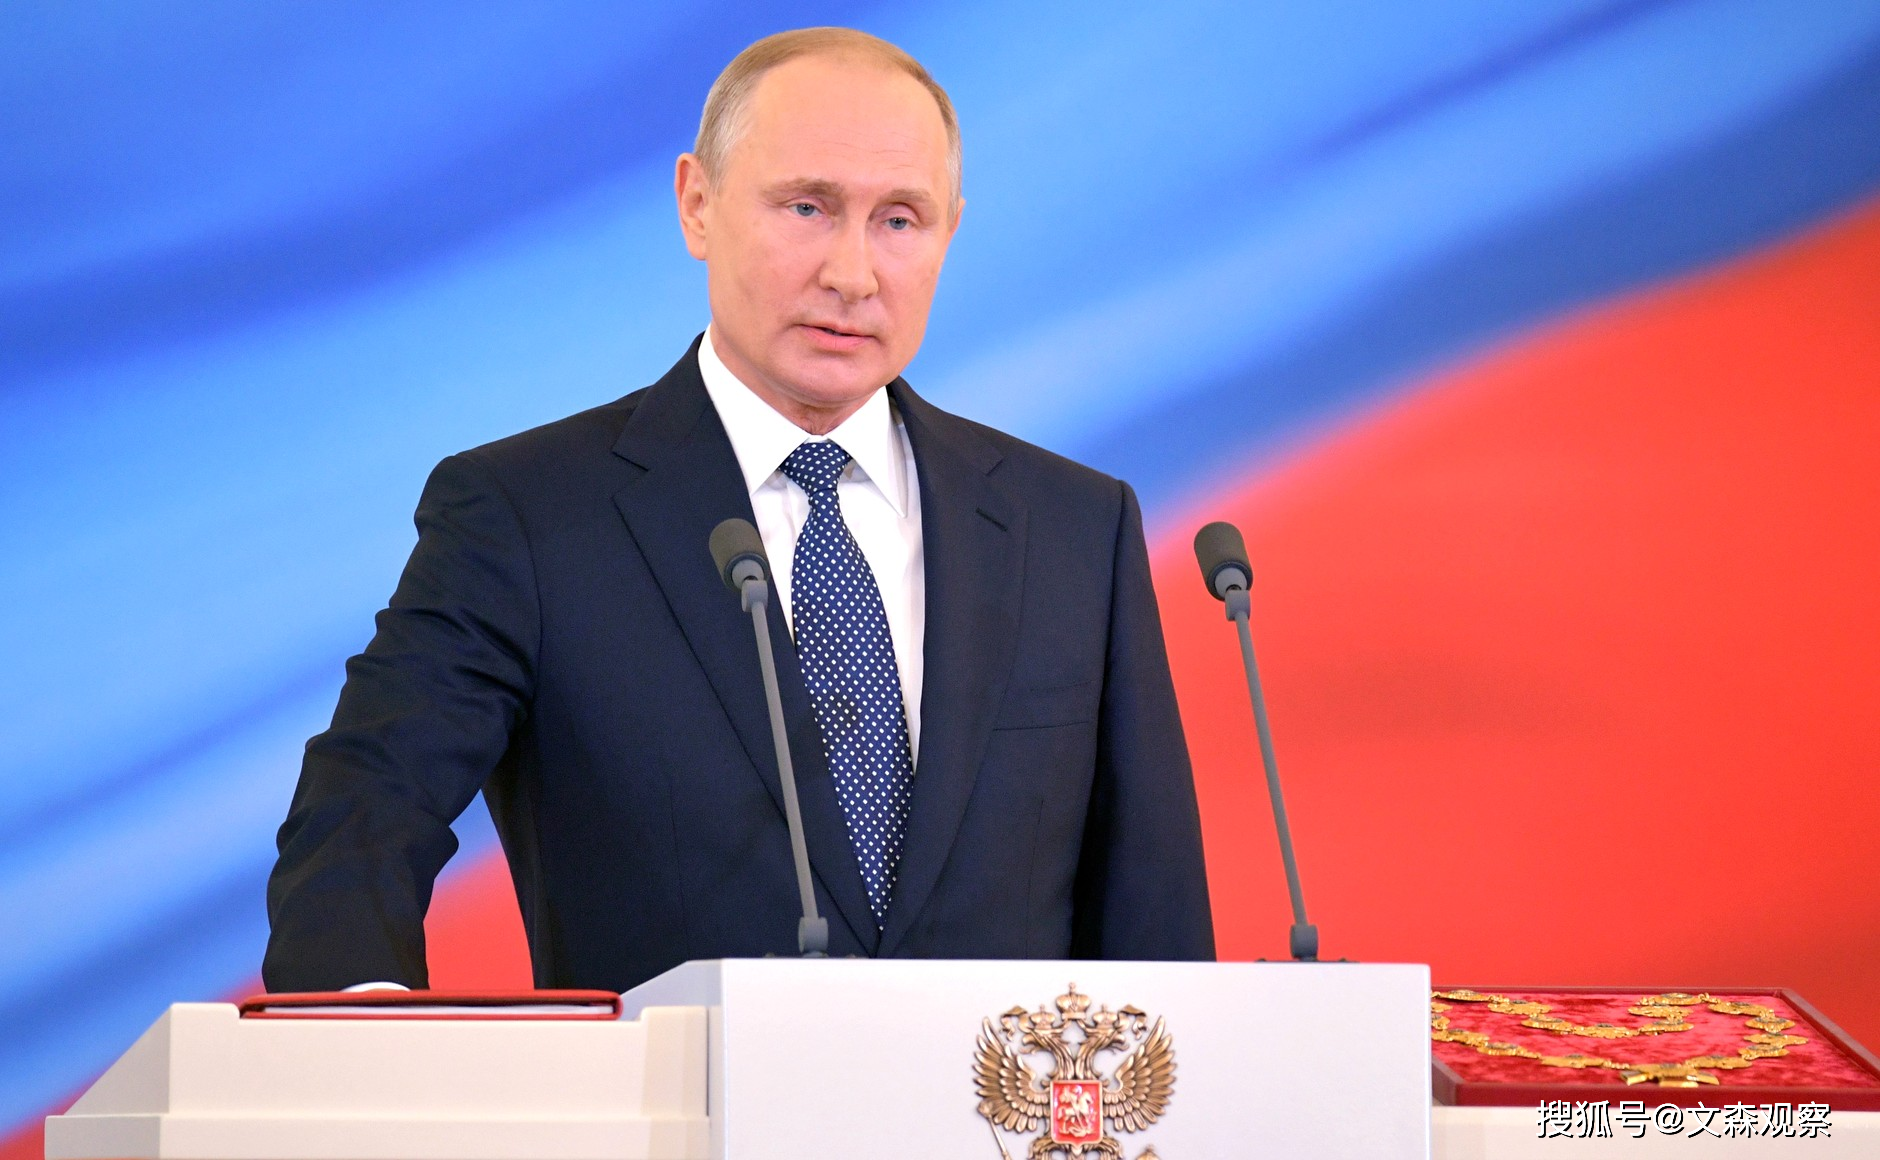 原创2018年普京第4次出任俄罗斯总统并发表就职演说